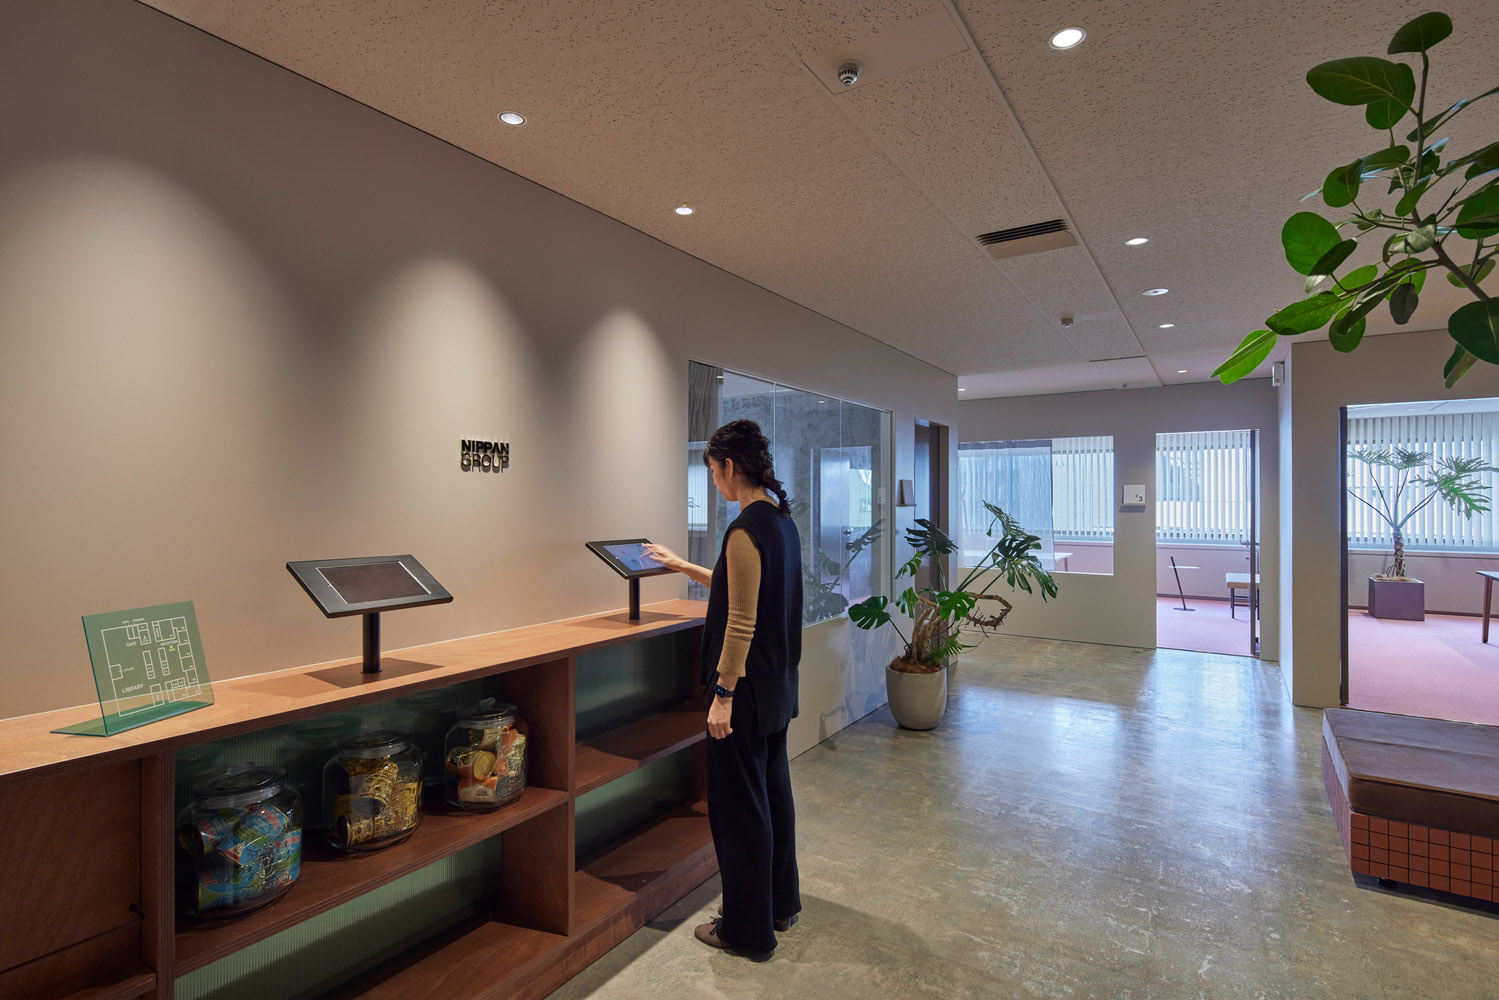 办公室设计,办公室设计案例,KOKUYO,日本,Nippan集团总部办公室,东京,工业风办公室